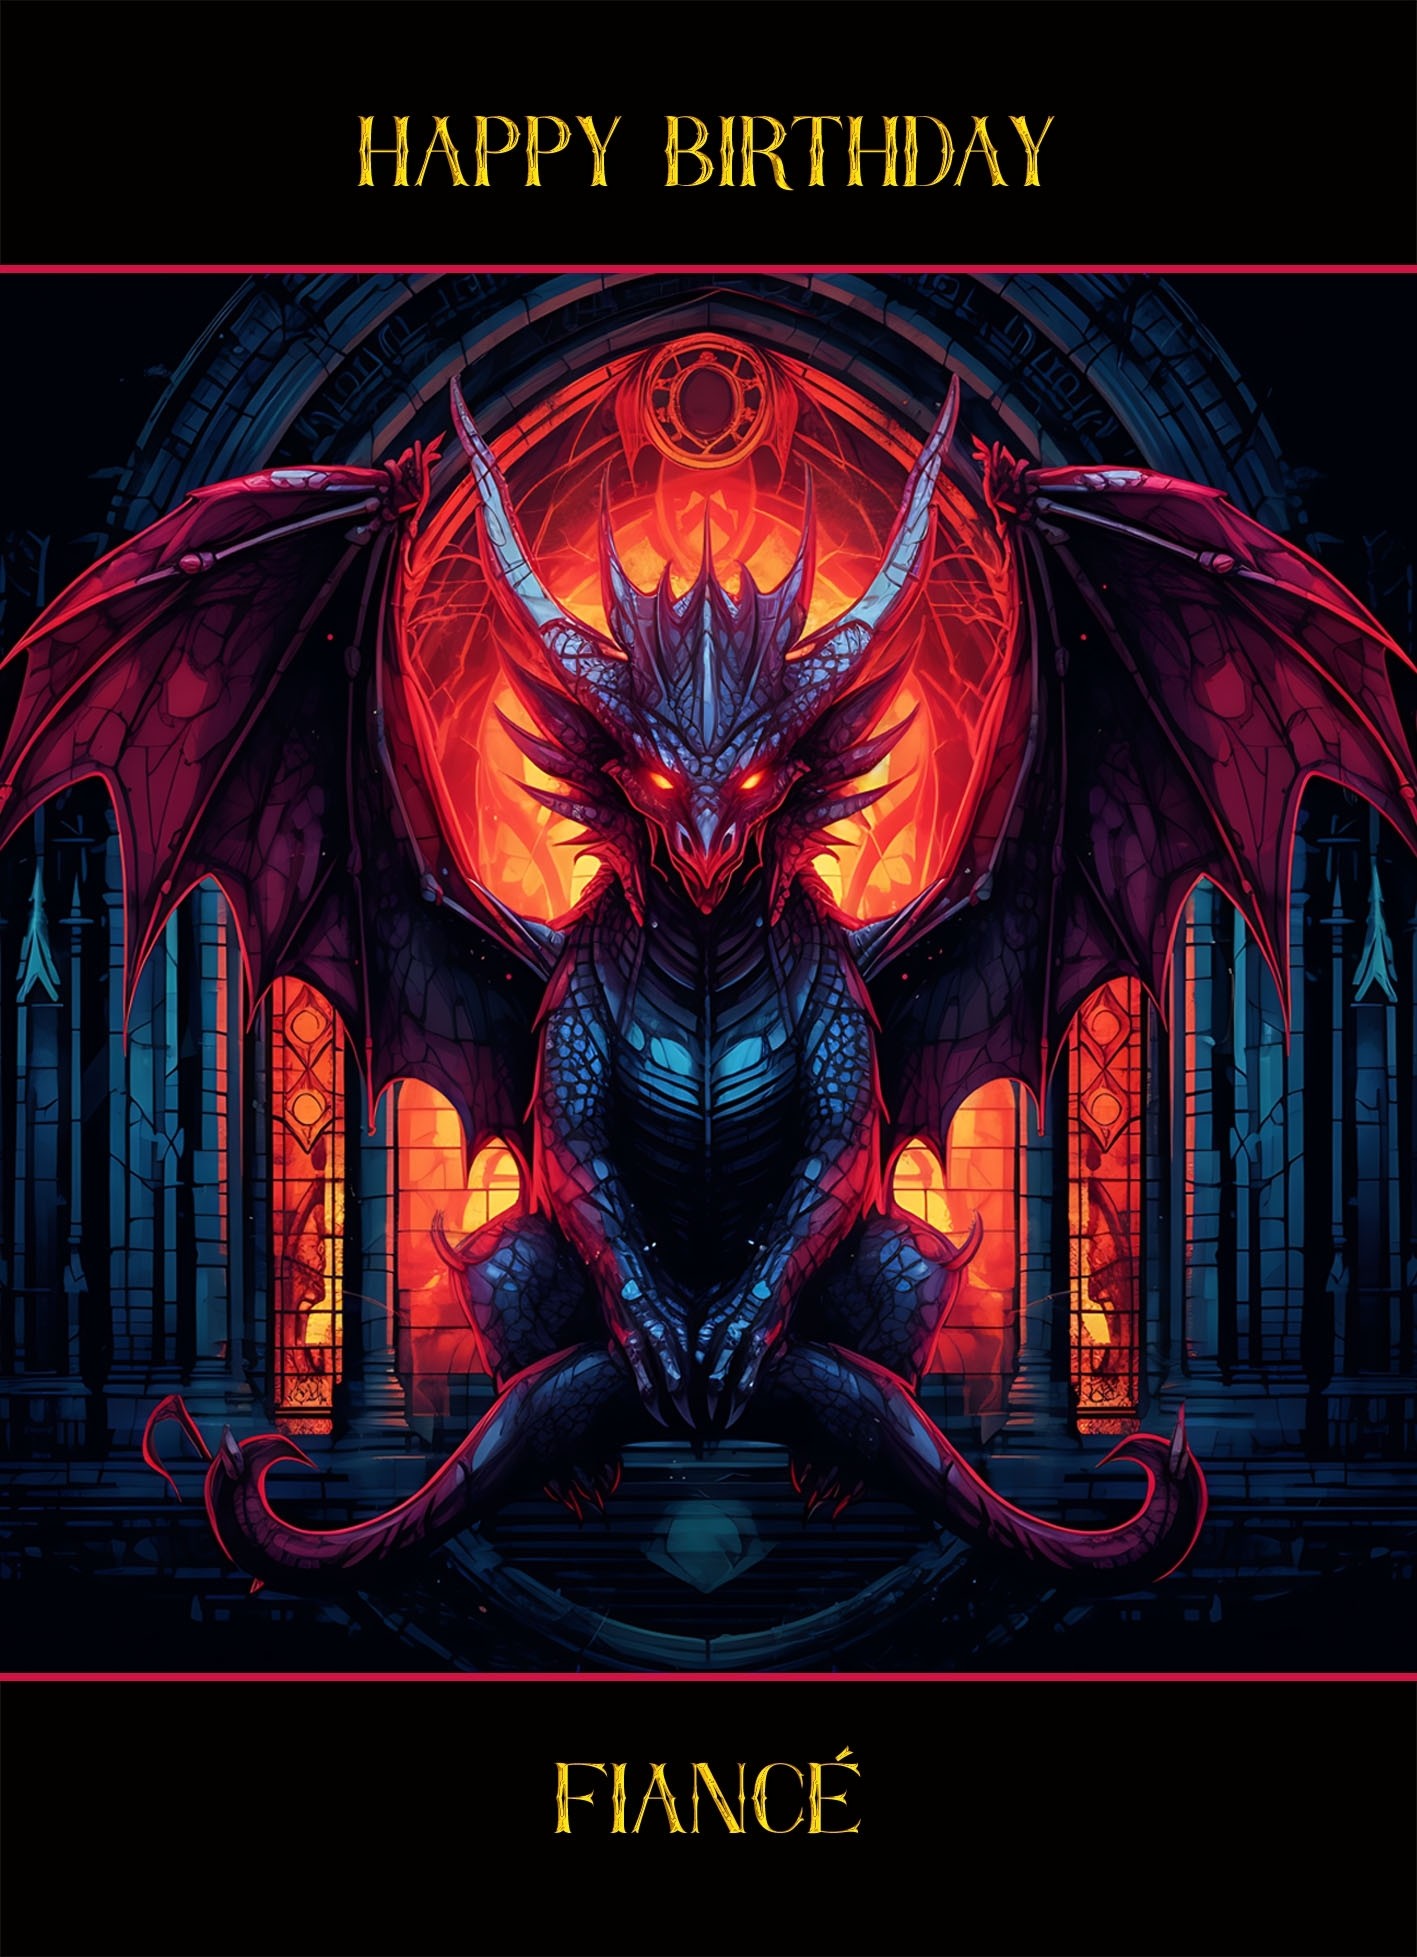 Gothic Fantasy Dragon Birthday Card For Fiance (Design 3)